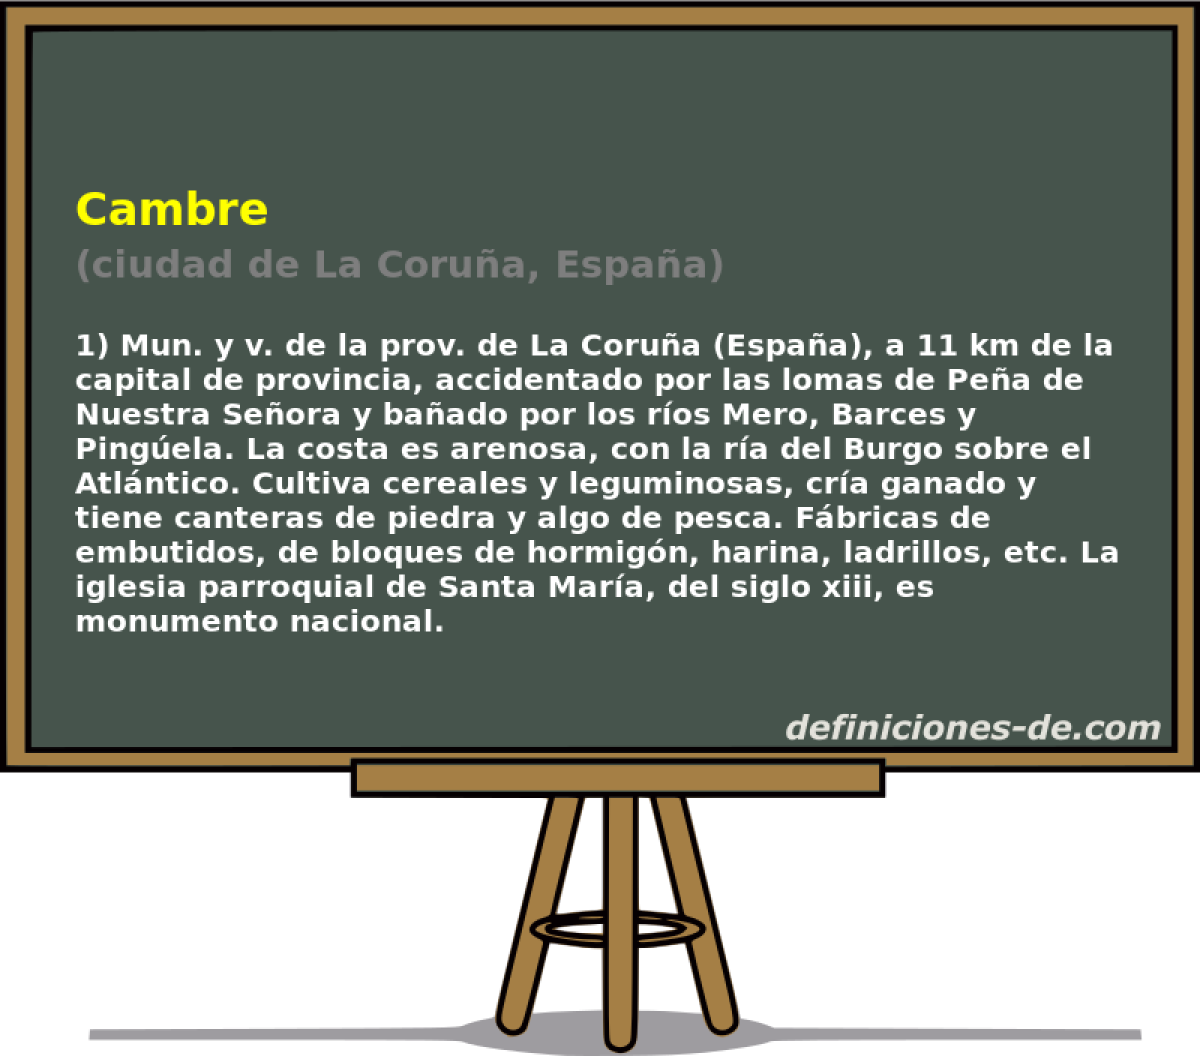 Cambre (ciudad de La Corua, Espaa)